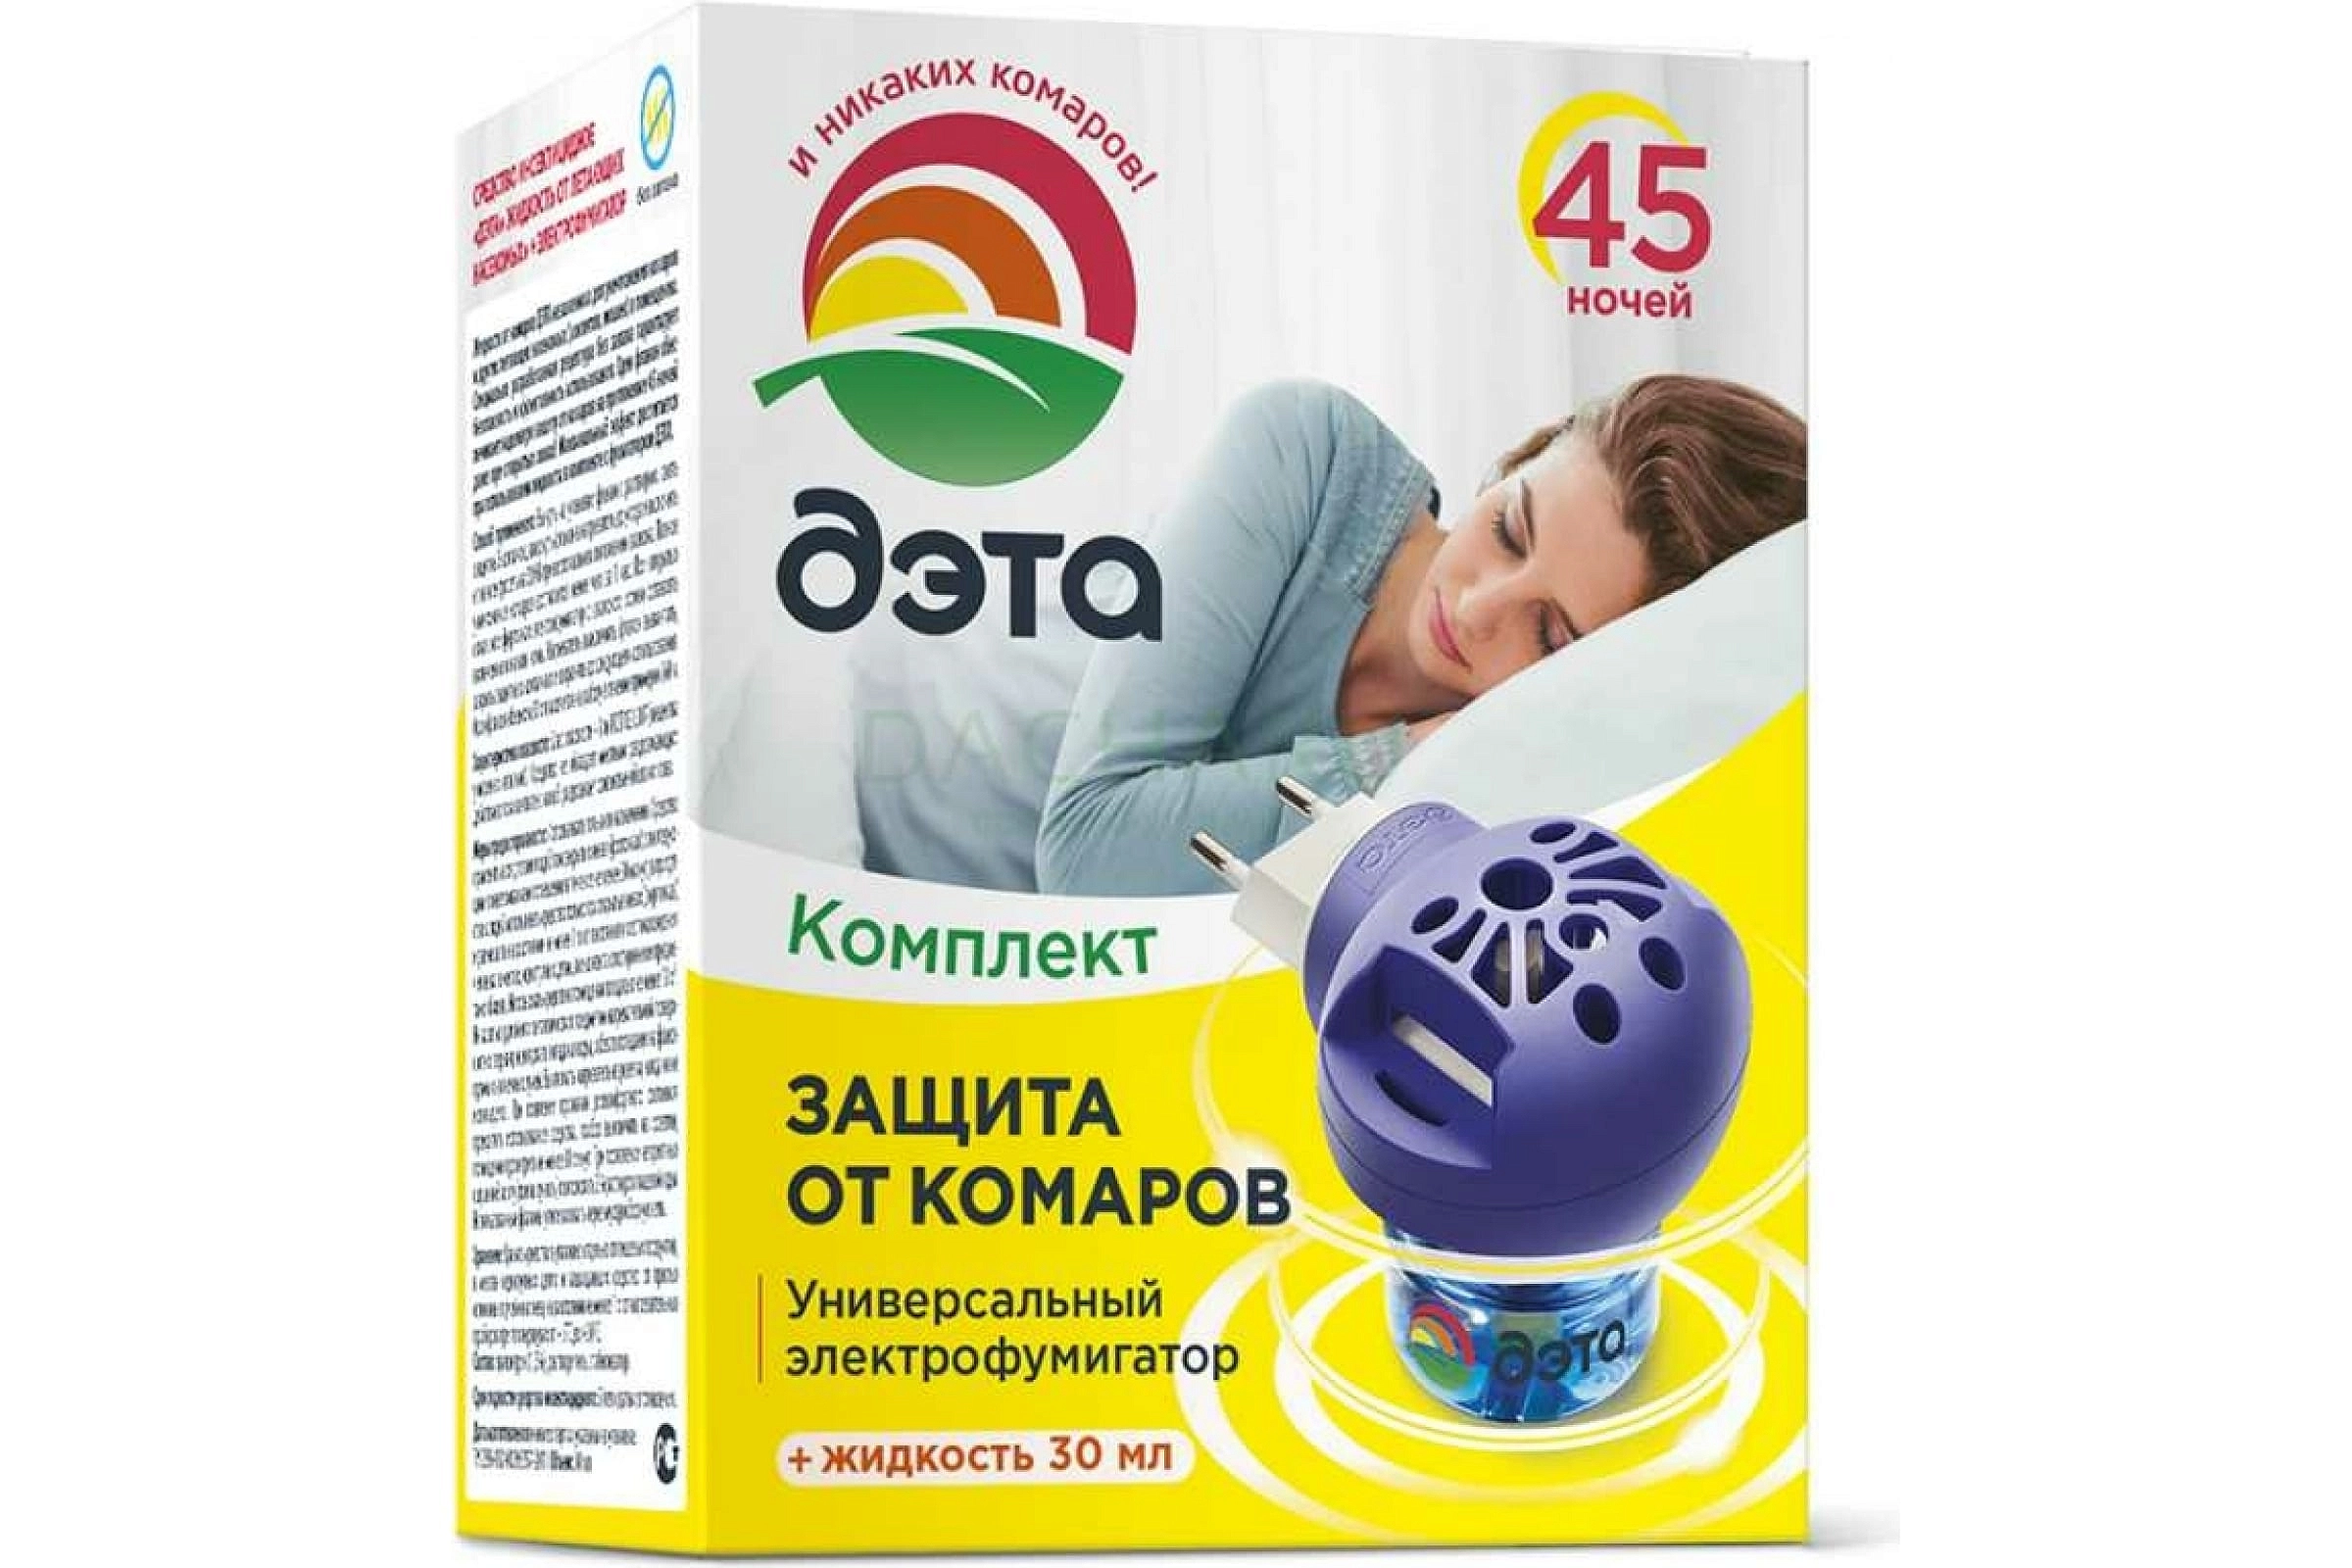 Репеллент ДЭТА Комплект от Комаров (45 ночей) фумигатор+жидкость